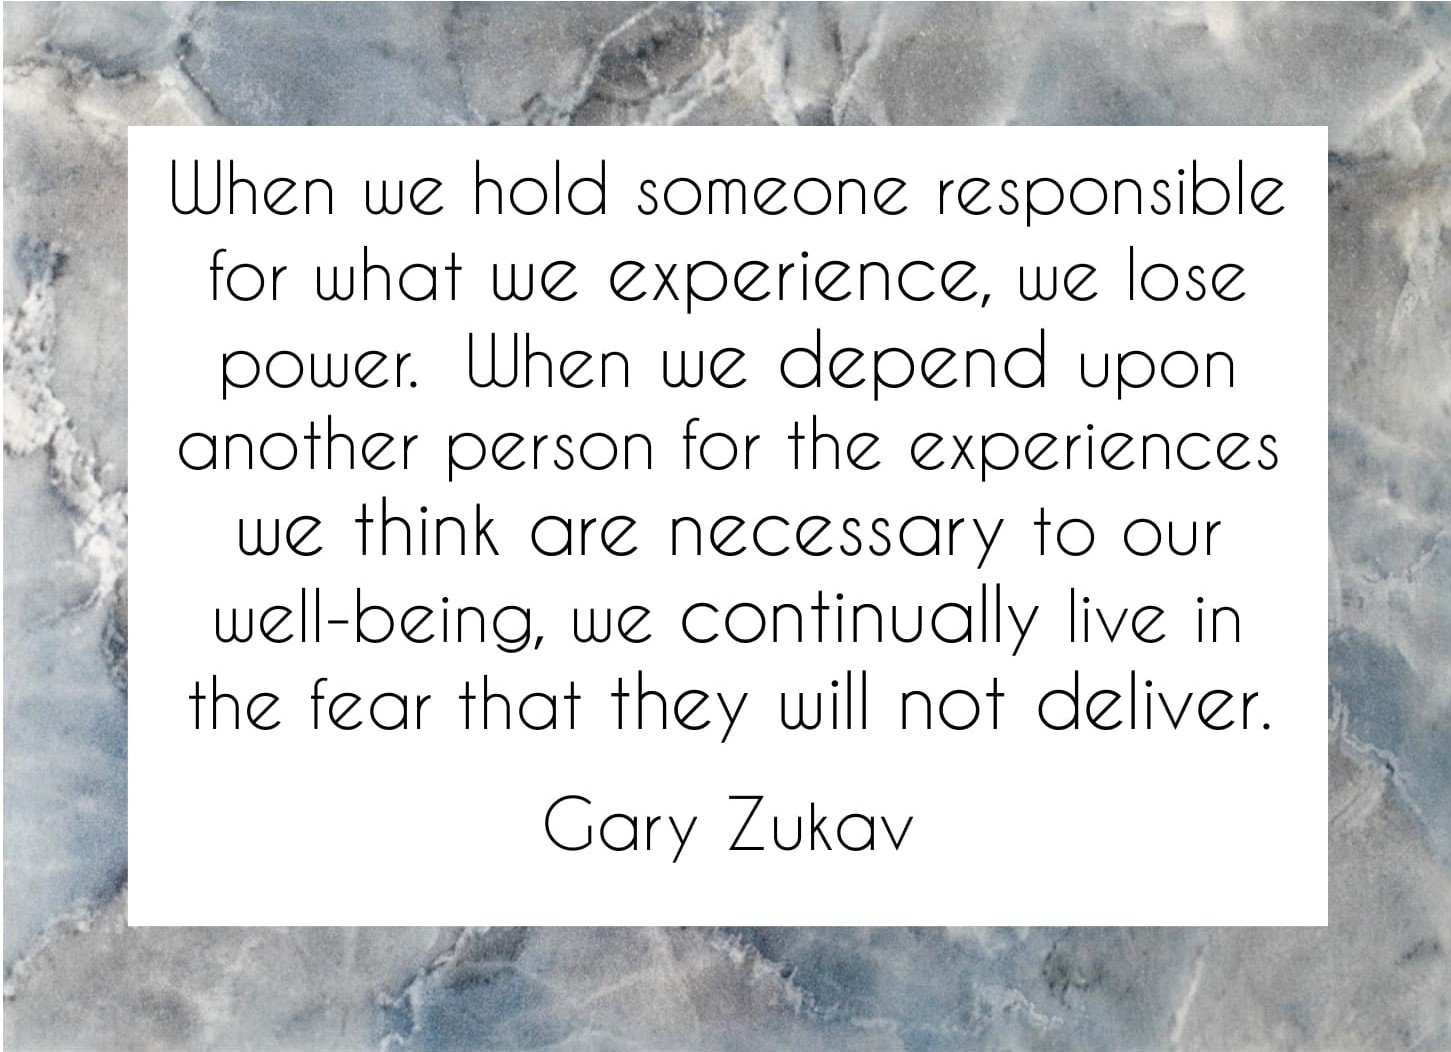 When we hold someone responsible Gary Zukav quote